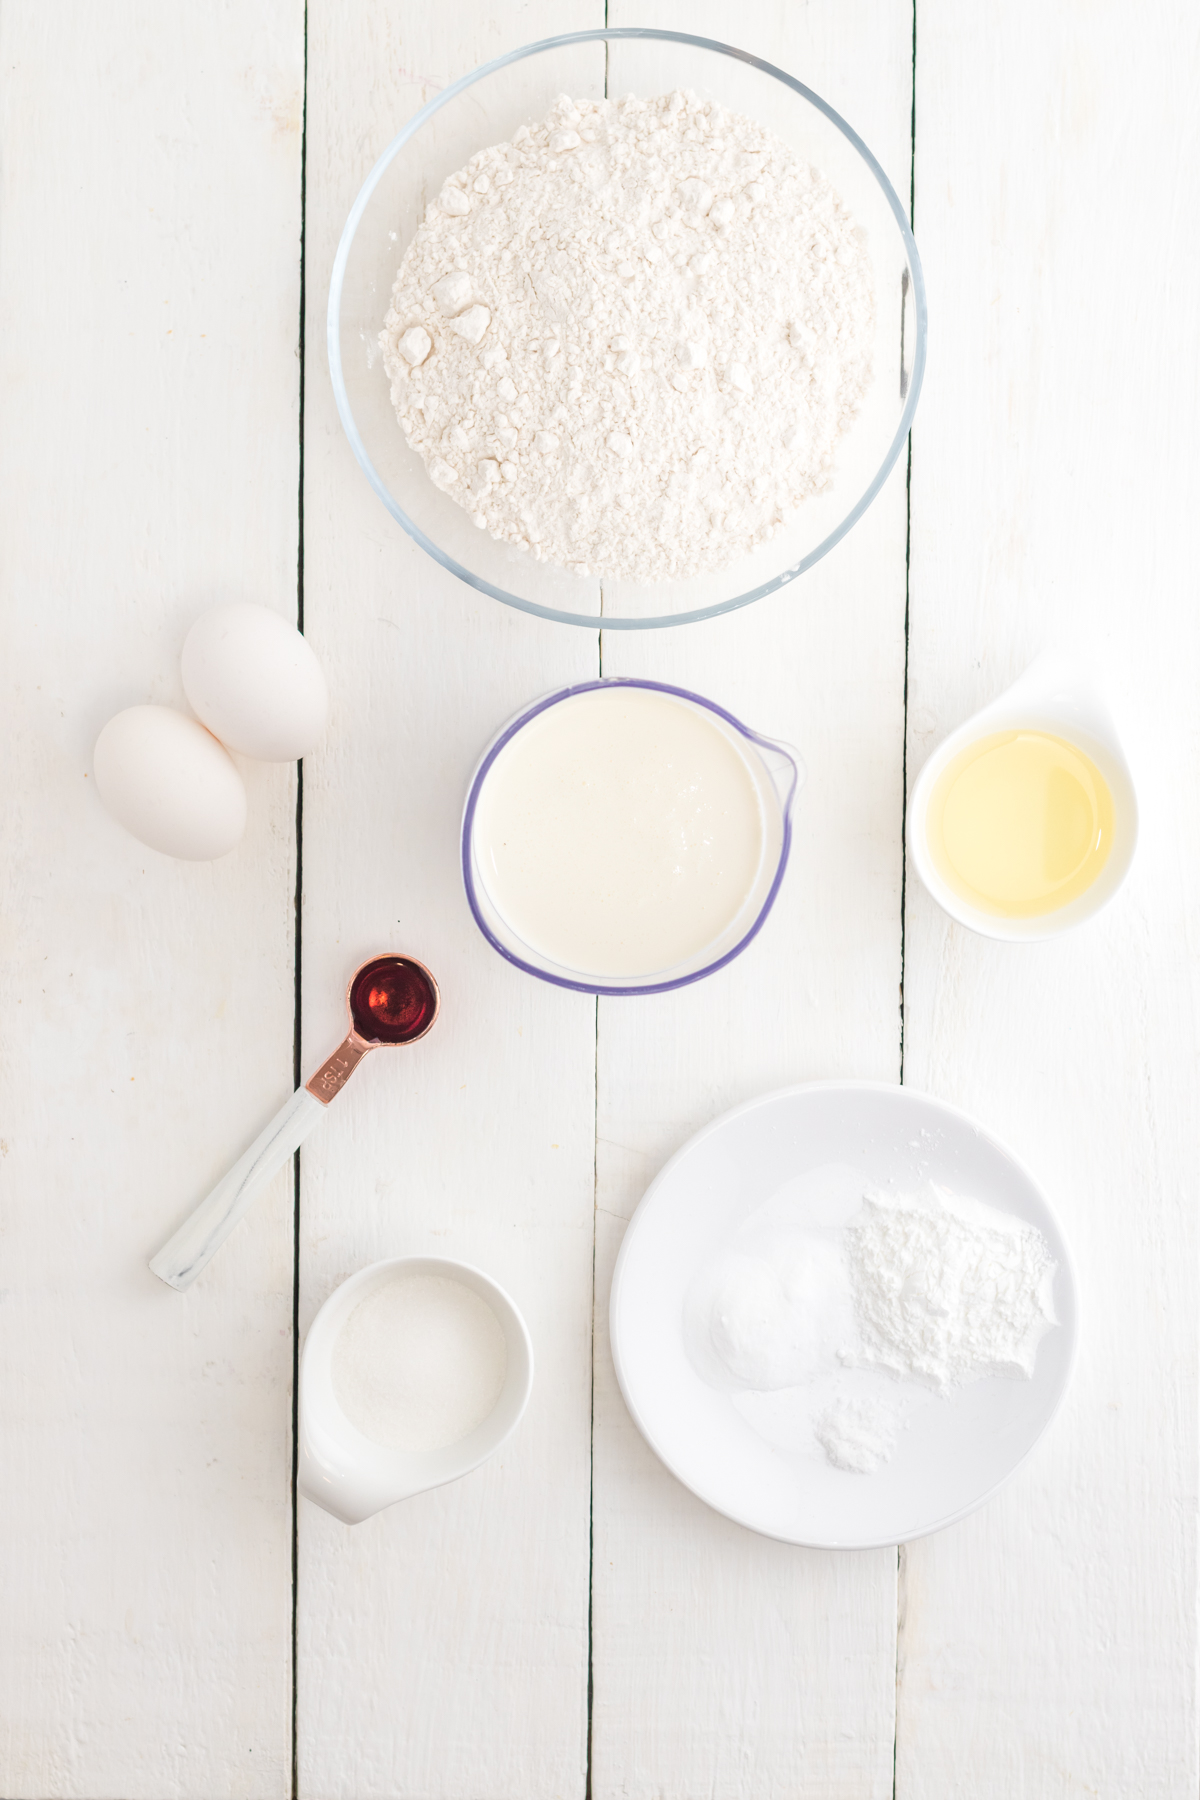 Ingredients to make sweet cream pancakes.